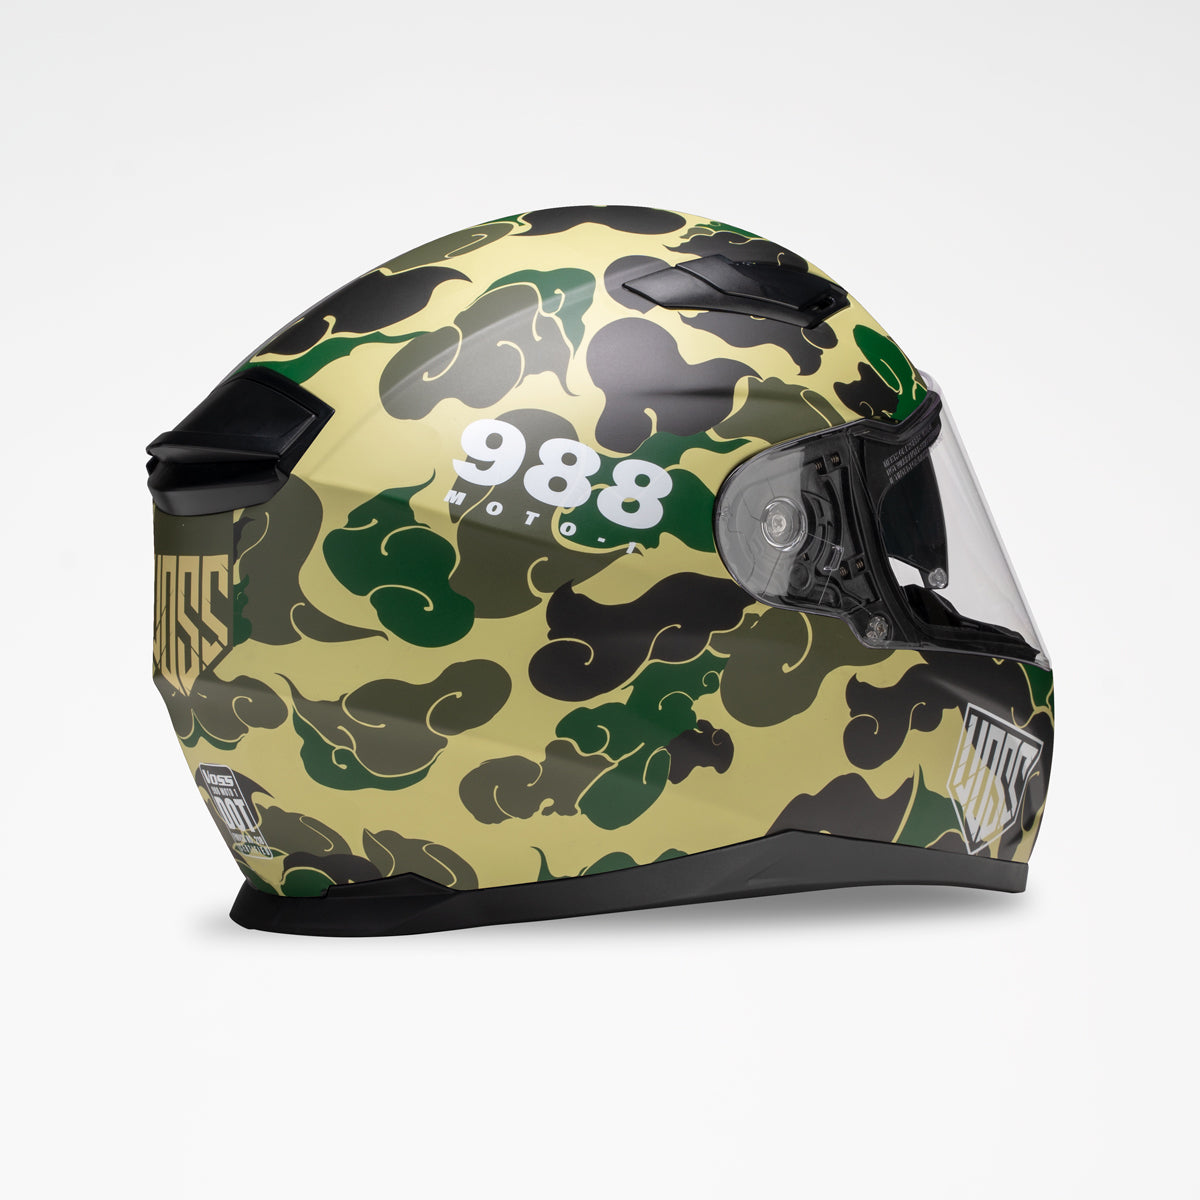 Voss 988 Moto-1 Green Camo Helmet